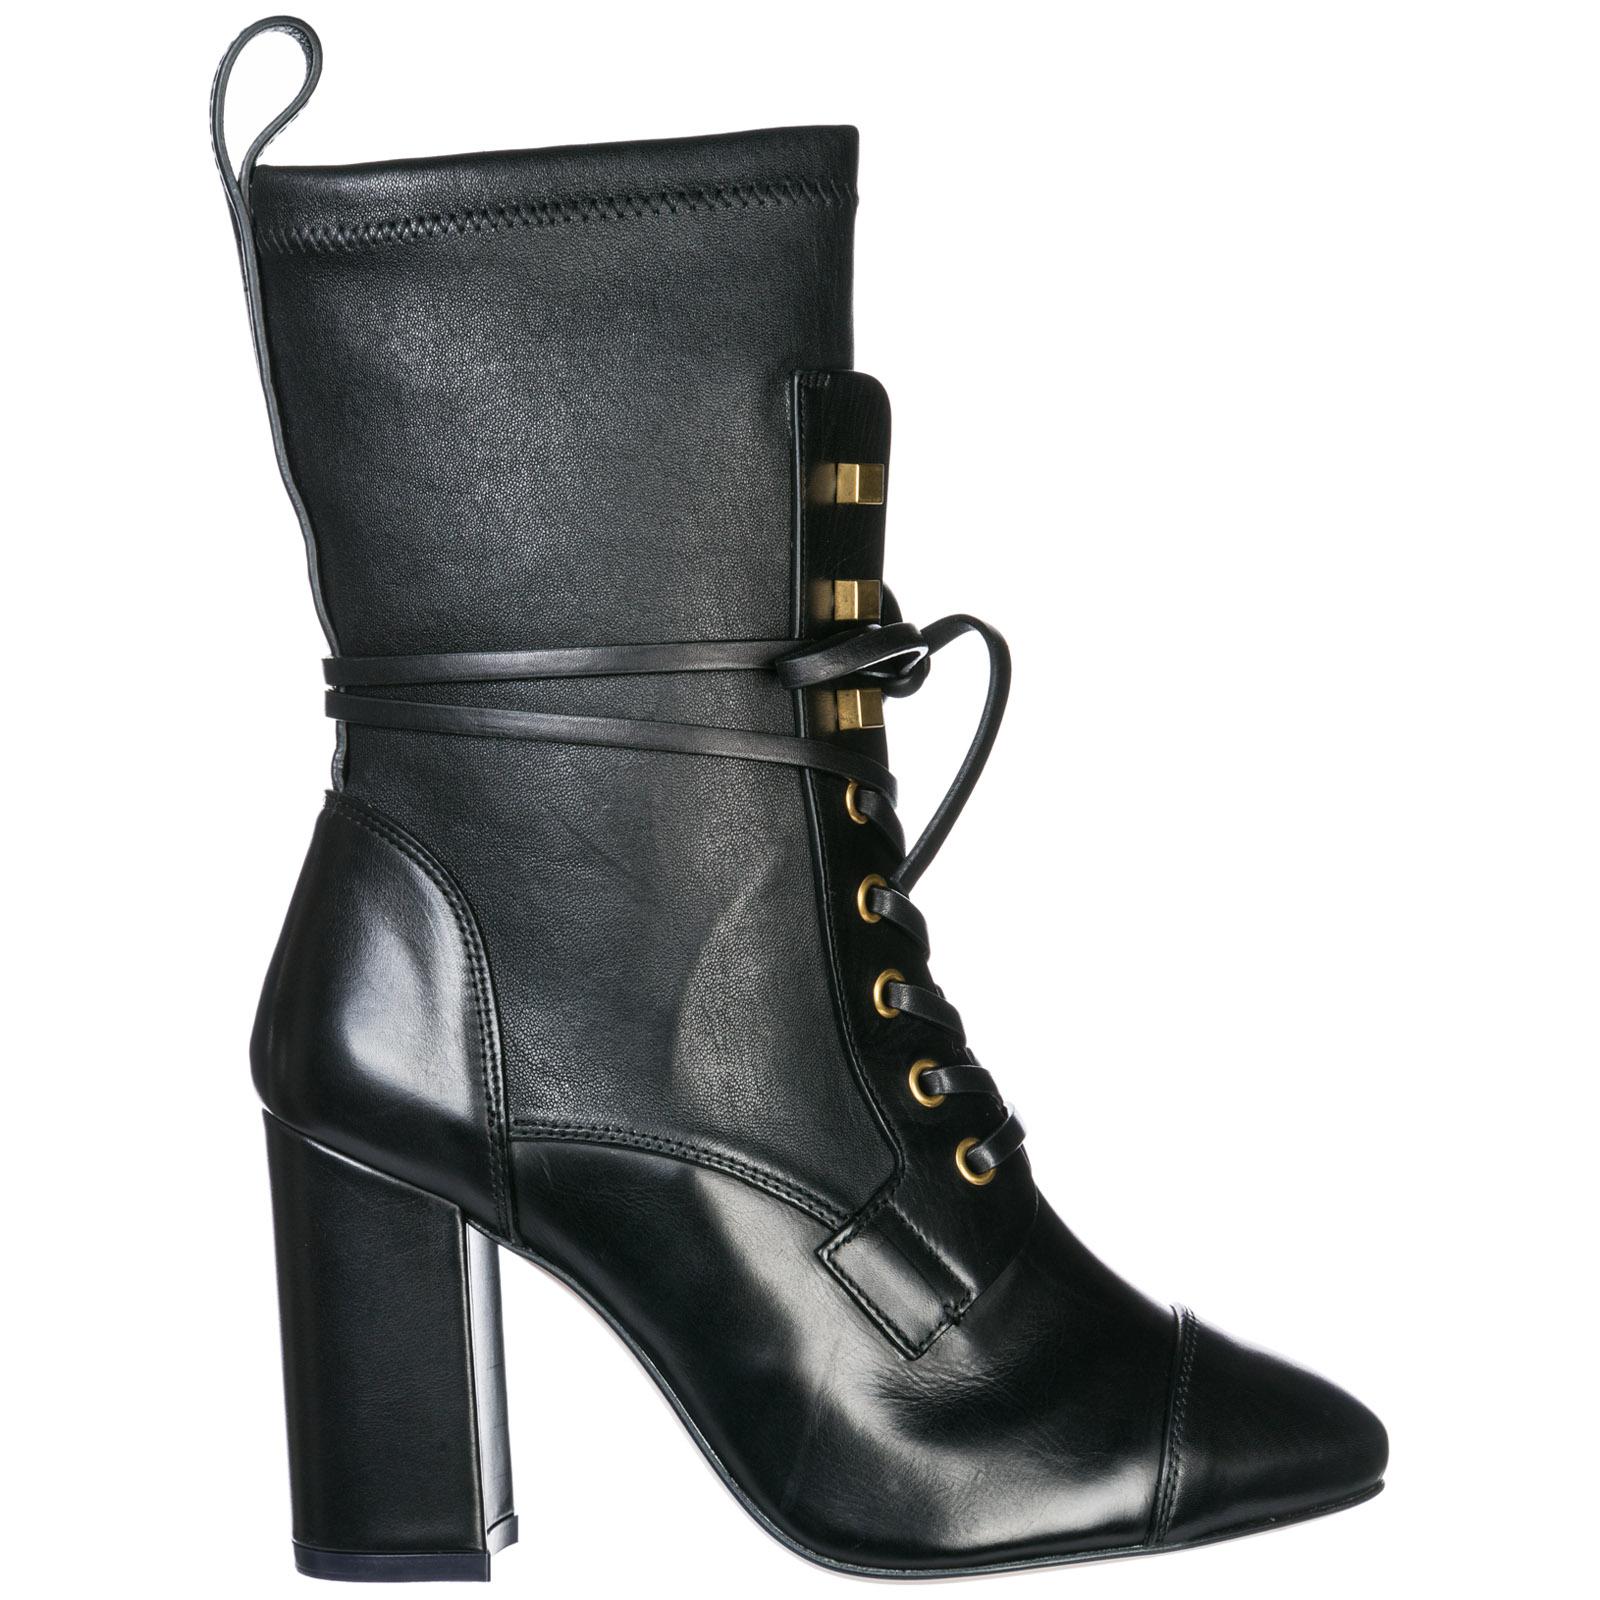 Stuart Weitzman Women's Leather Heel Ankle Boots Booties in Black - Lyst